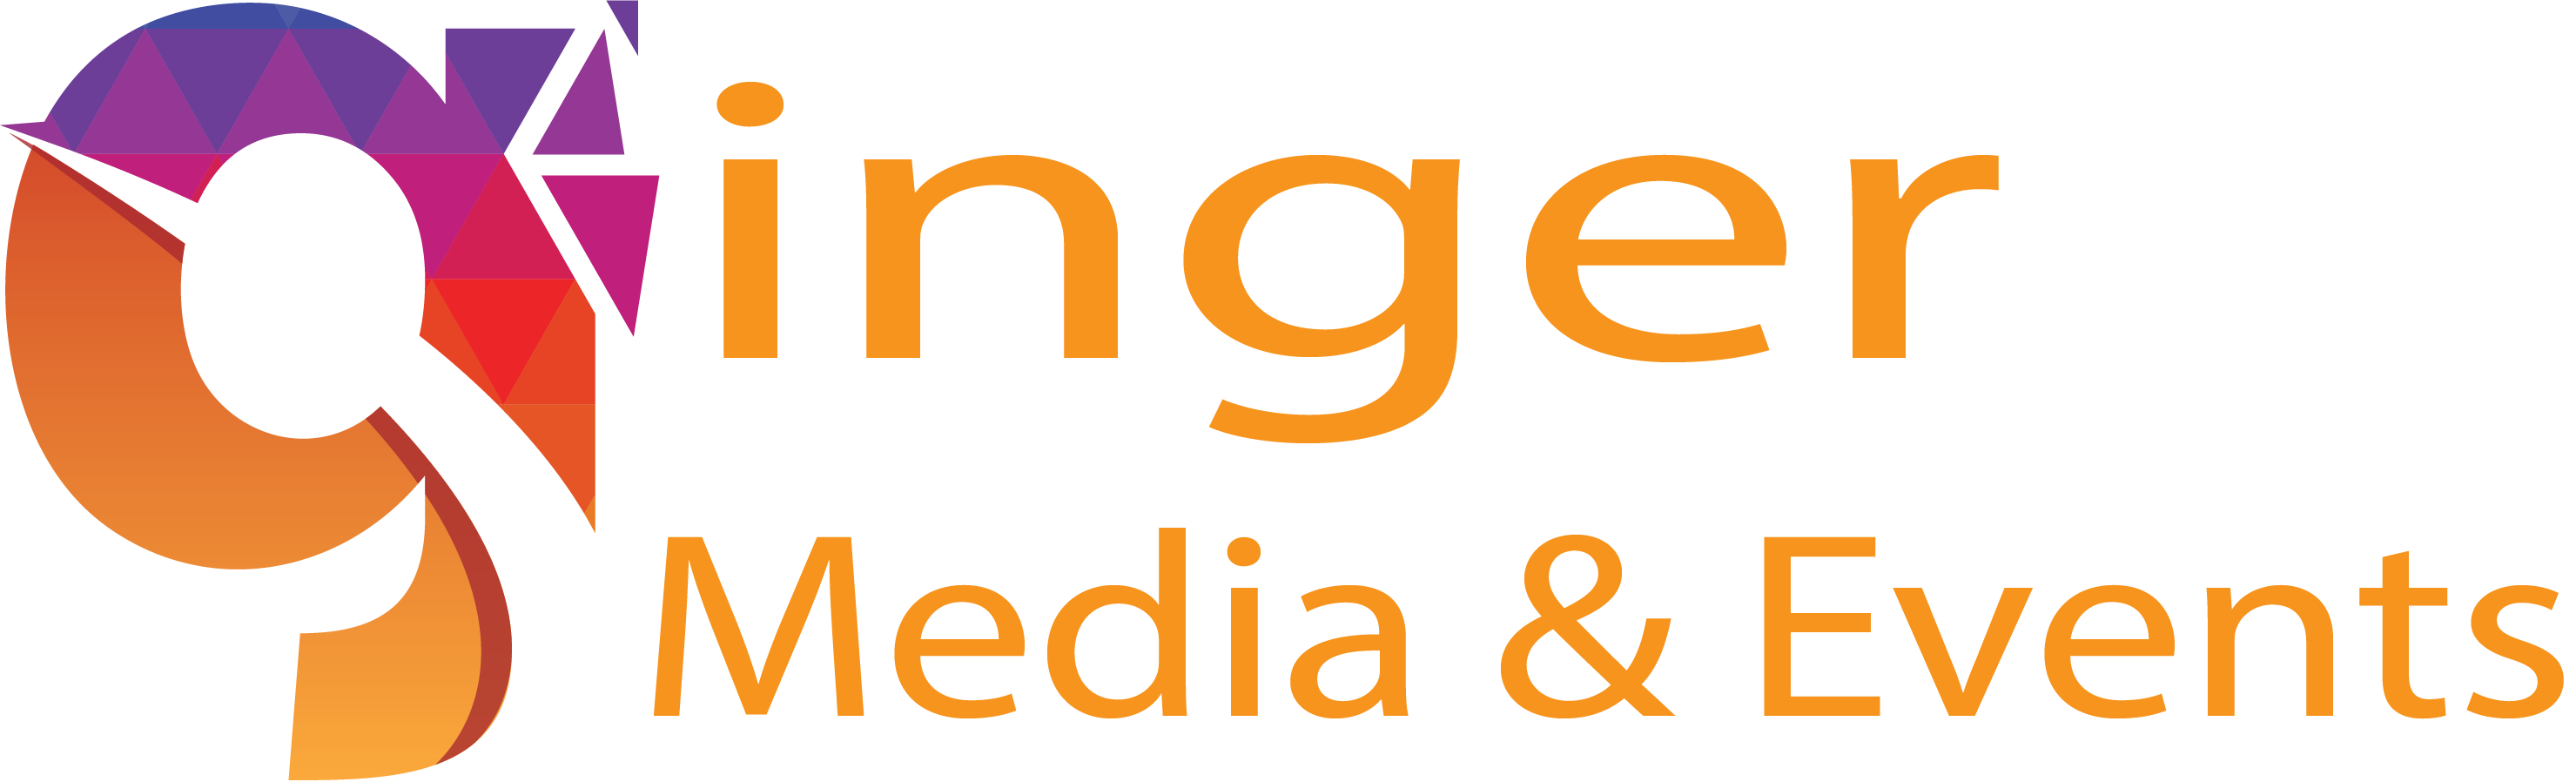 Ginger Media & Events